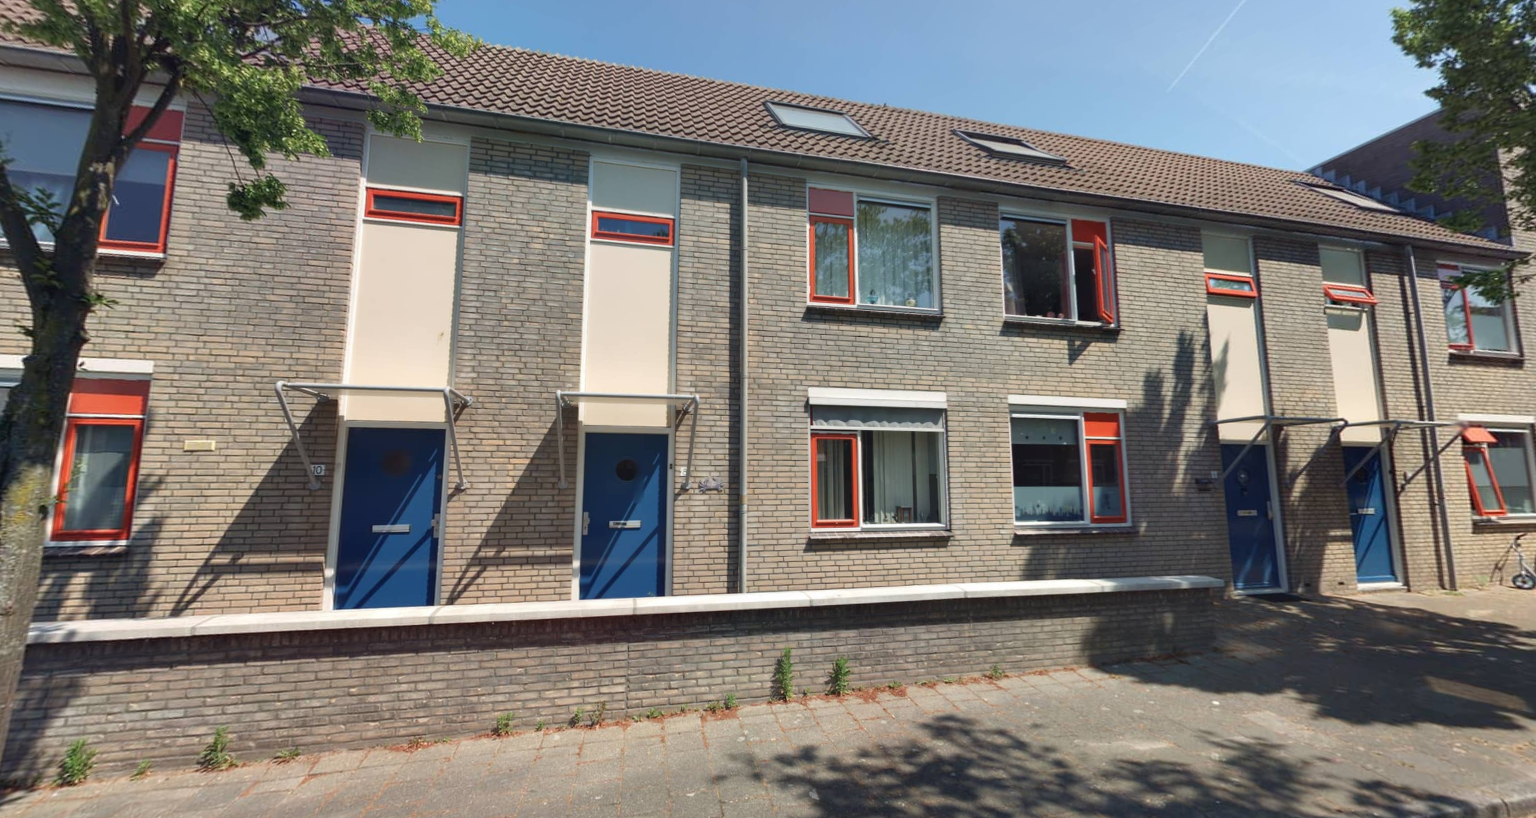 Molenbergstraat 8, 4611 GA Bergen op Zoom, Nederland